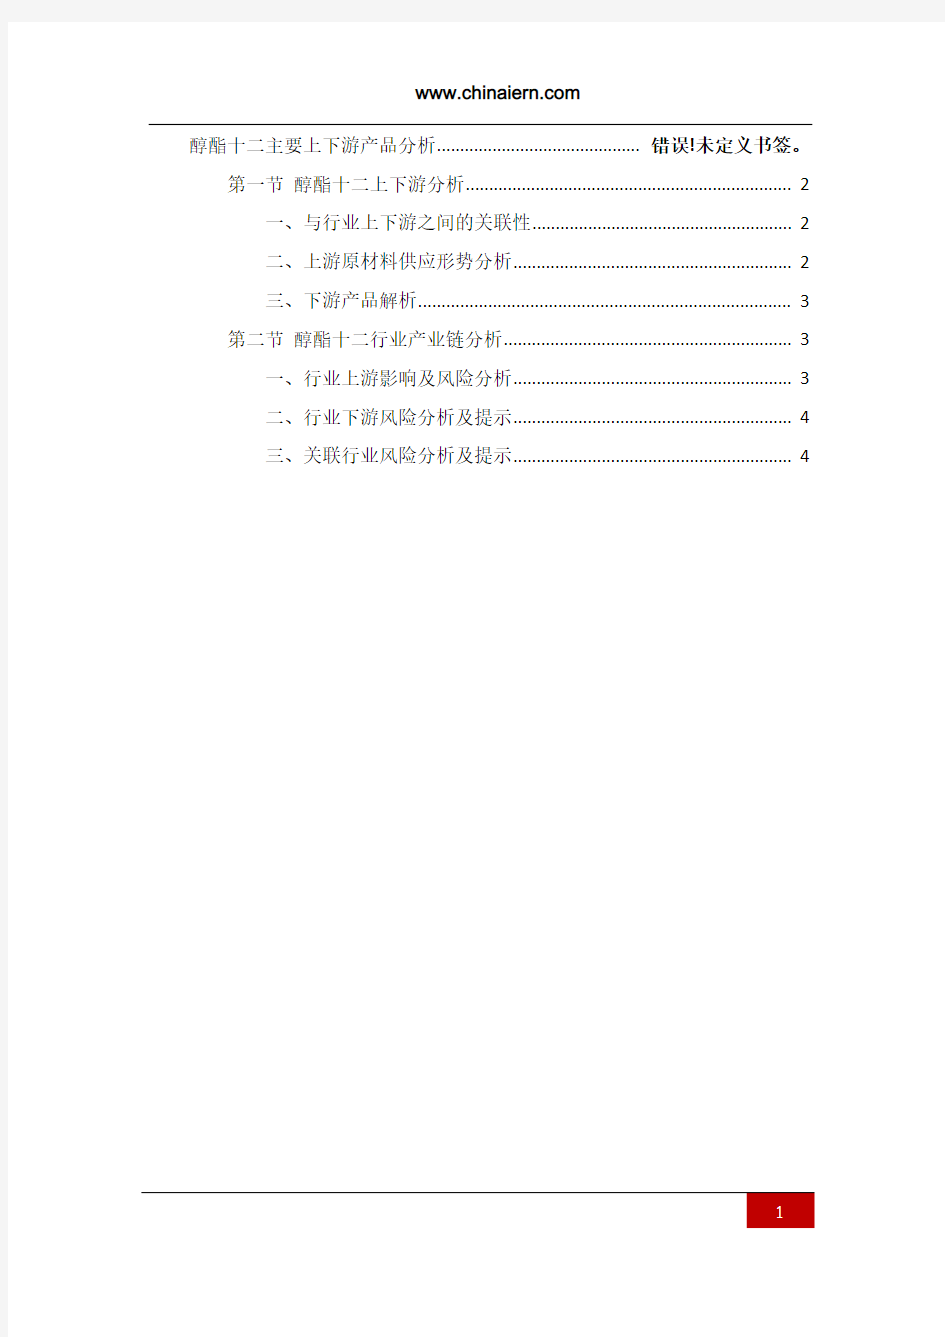 醇酯十二主要上下游产品分析(上海环盟)